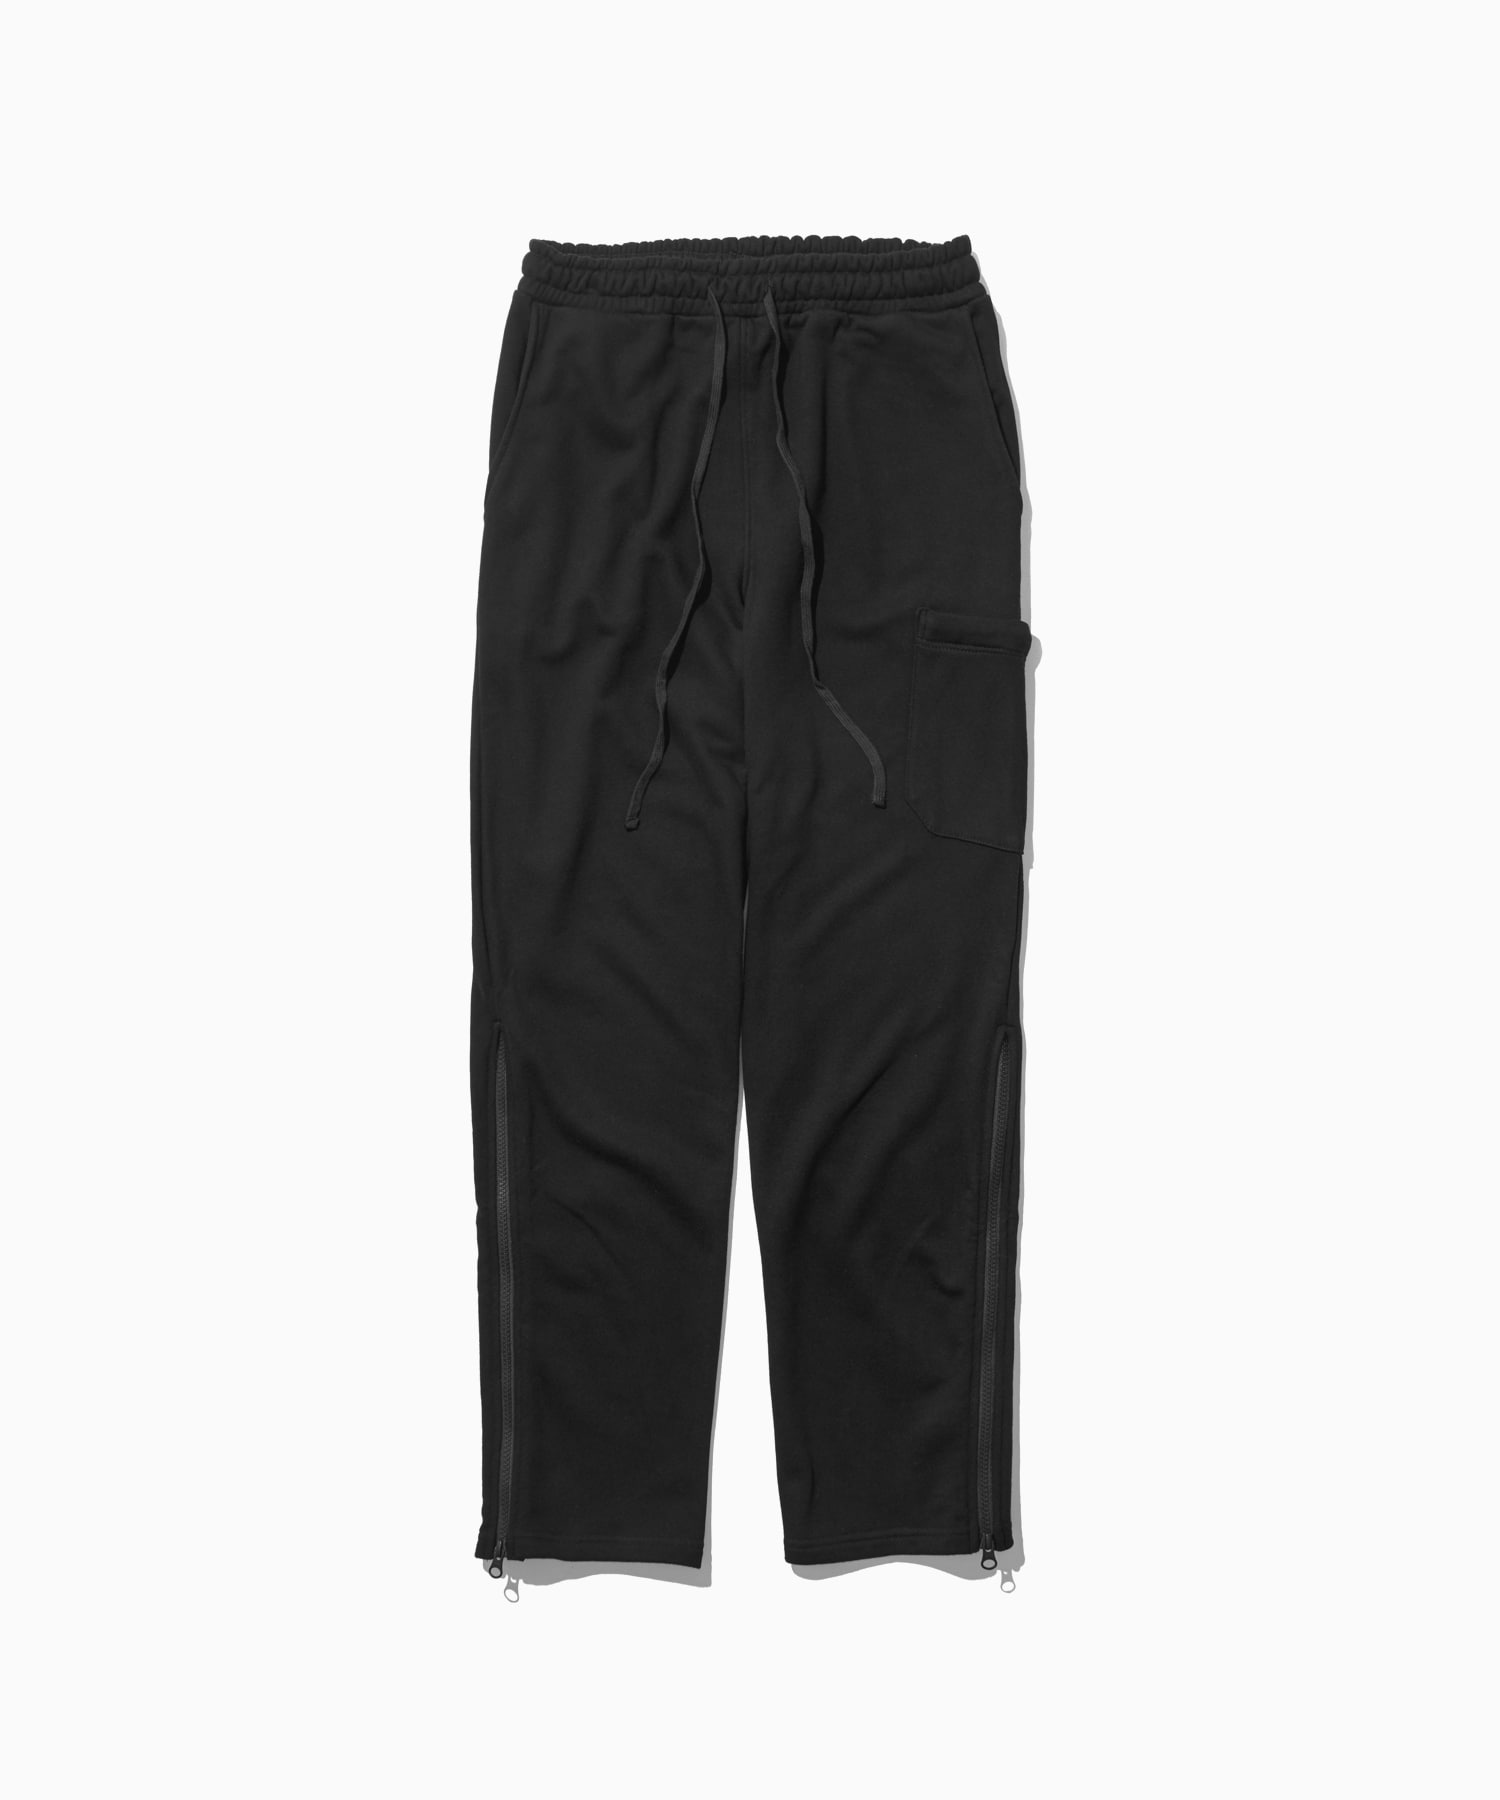 side zipper sweat pants black - 로어링라드(ROARINGRAD)